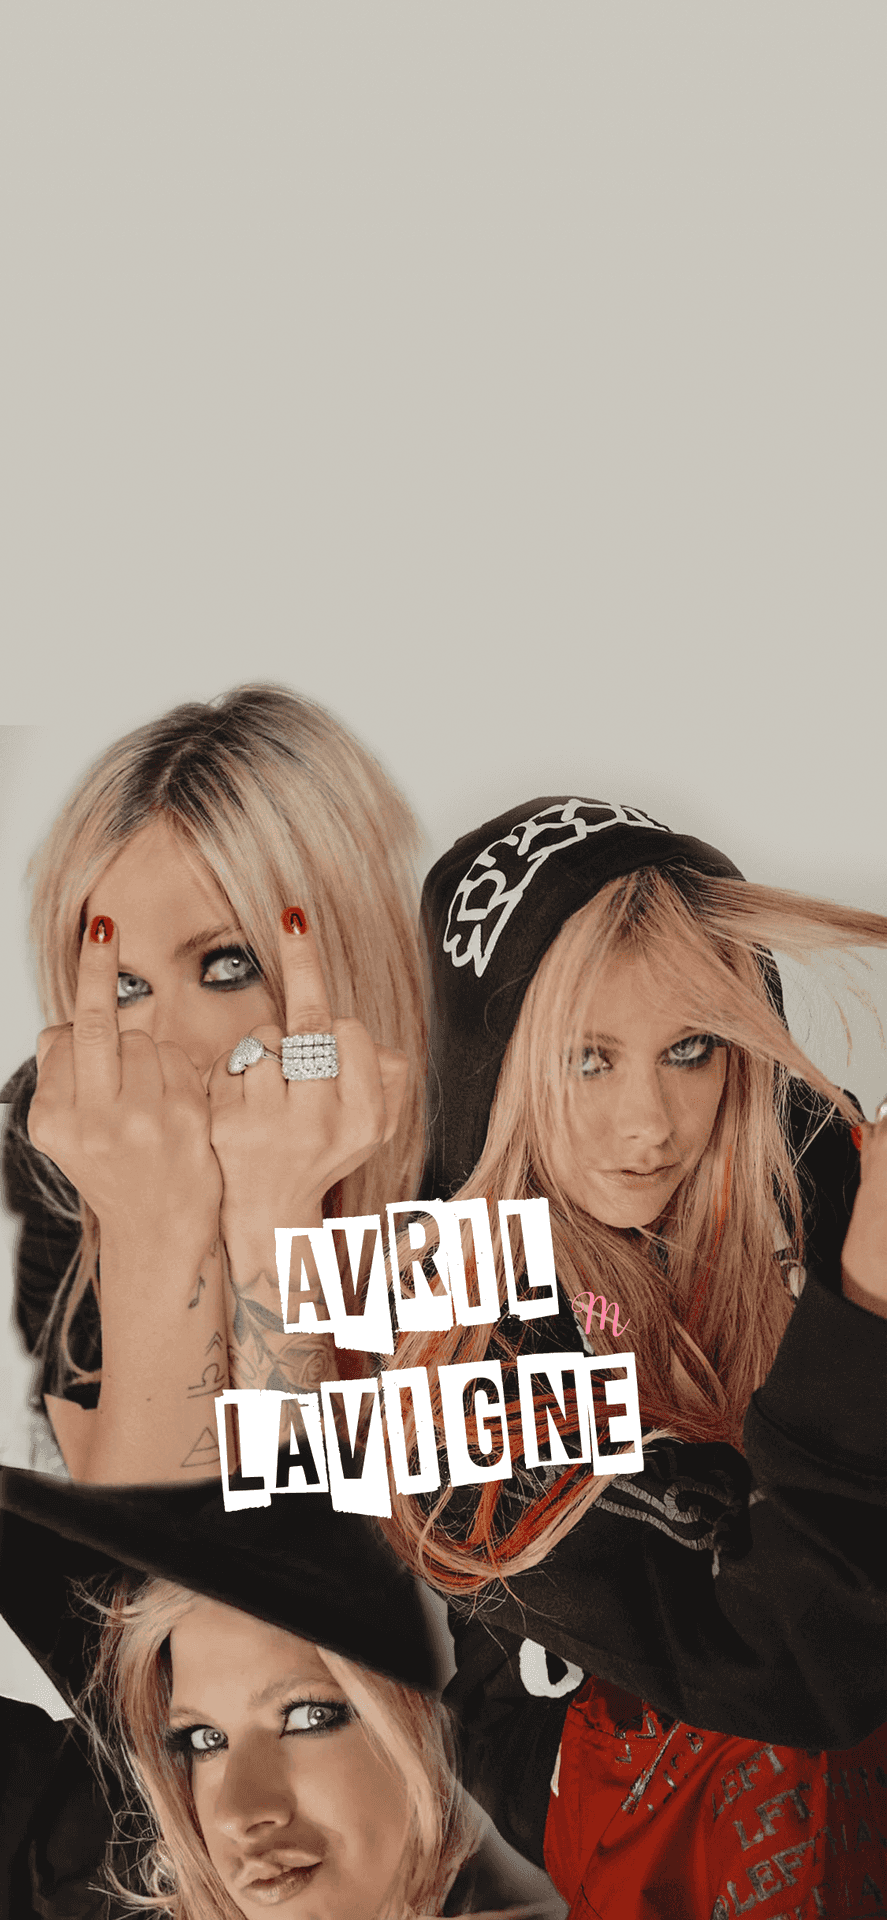 Avrillavigne Ist Die Künstlerin, Die Den Weg Für Eine Neue Generation Des Pop Punk Geebnet Hat.